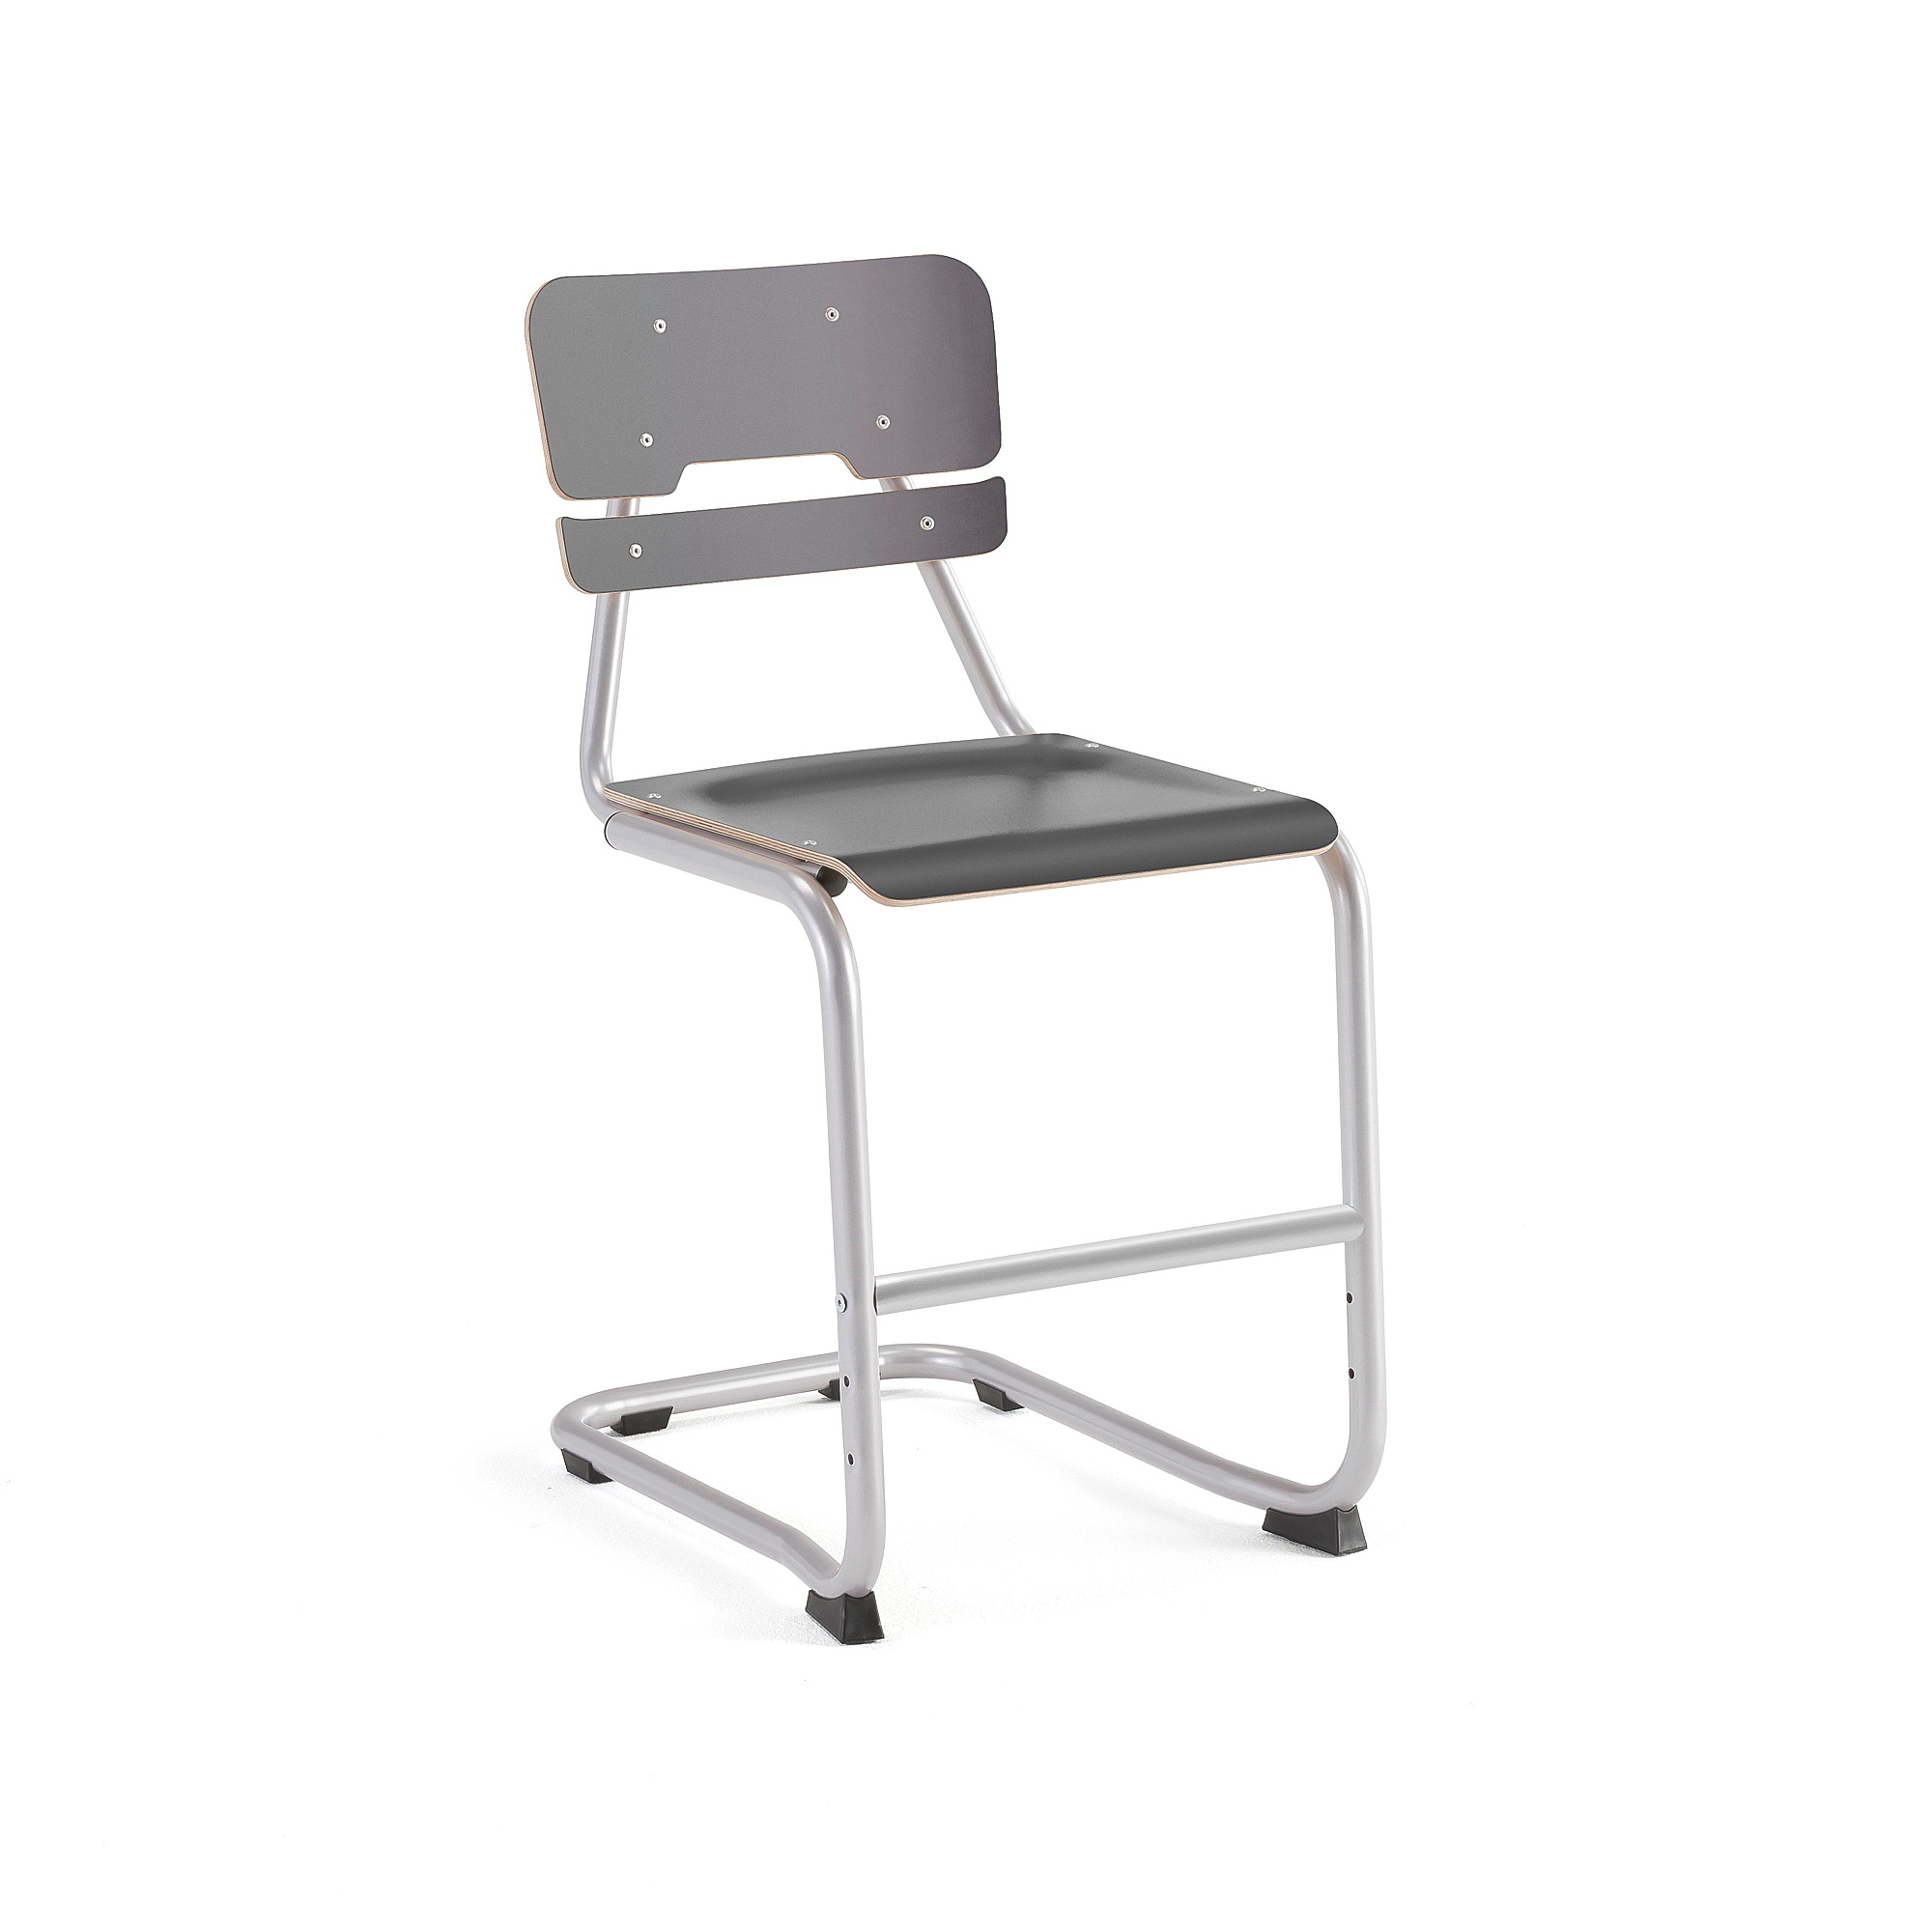 Školní židle LEGERE I, výška 500 mm, stříbrná, antracitově šedá